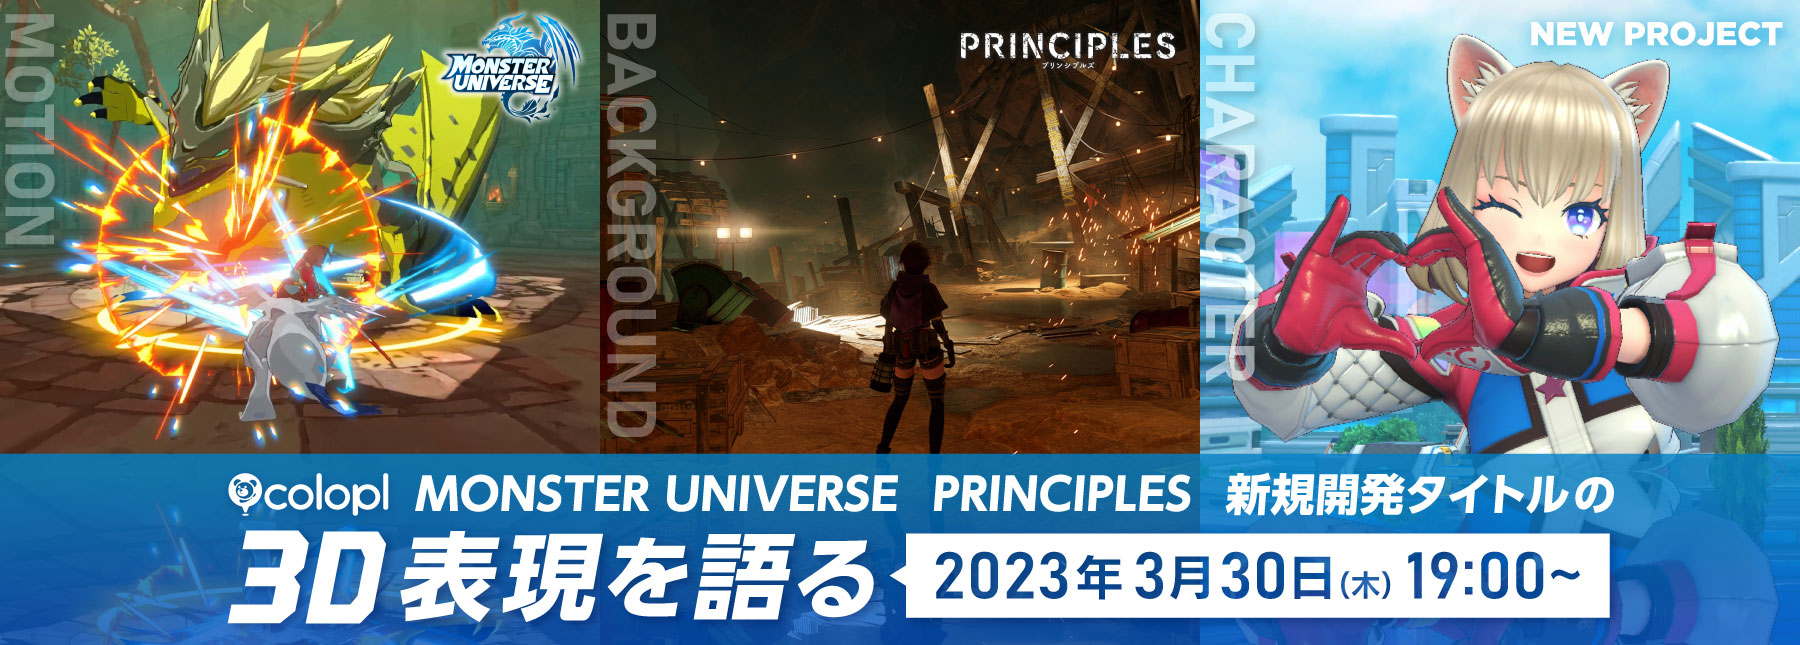 株式会社コロプラ オンラインセミナー【『MONSTER UNIVERSE』『PRINCIPLES』新規開発タイトルの3D表現を語る】開催決定！